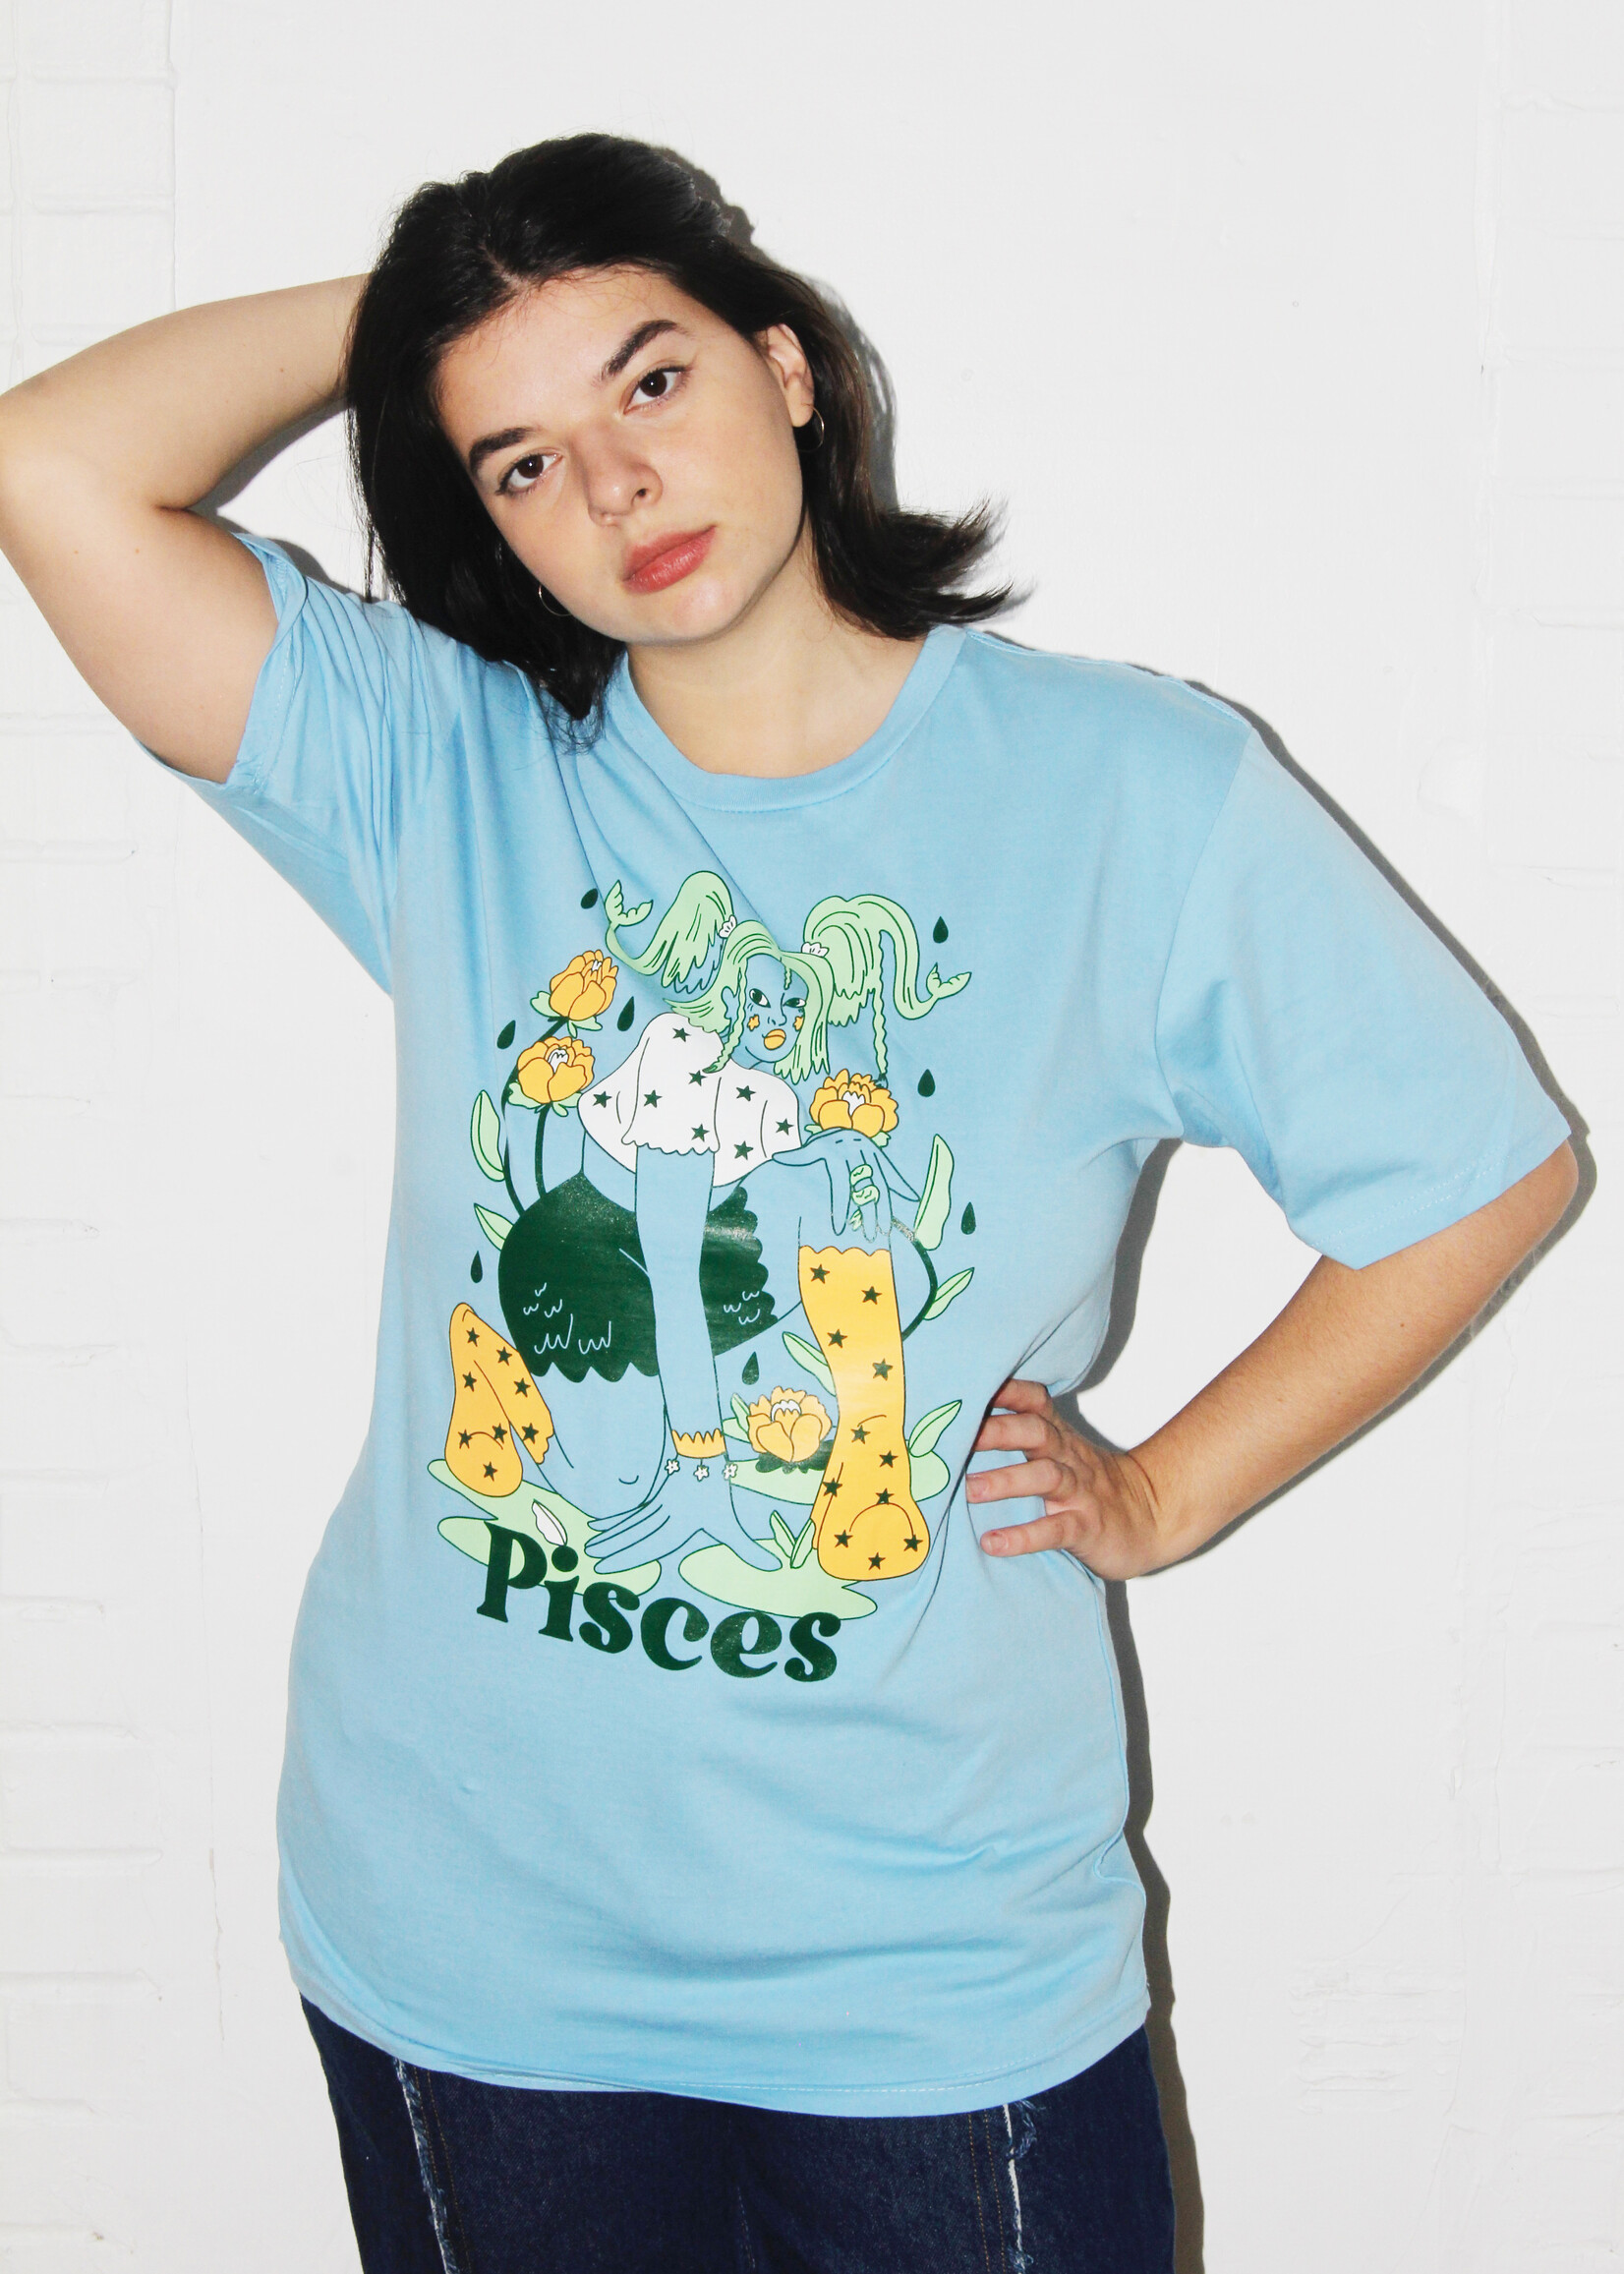 Spll Girl Spll Girl Zodiac T-Shirts: Pisces